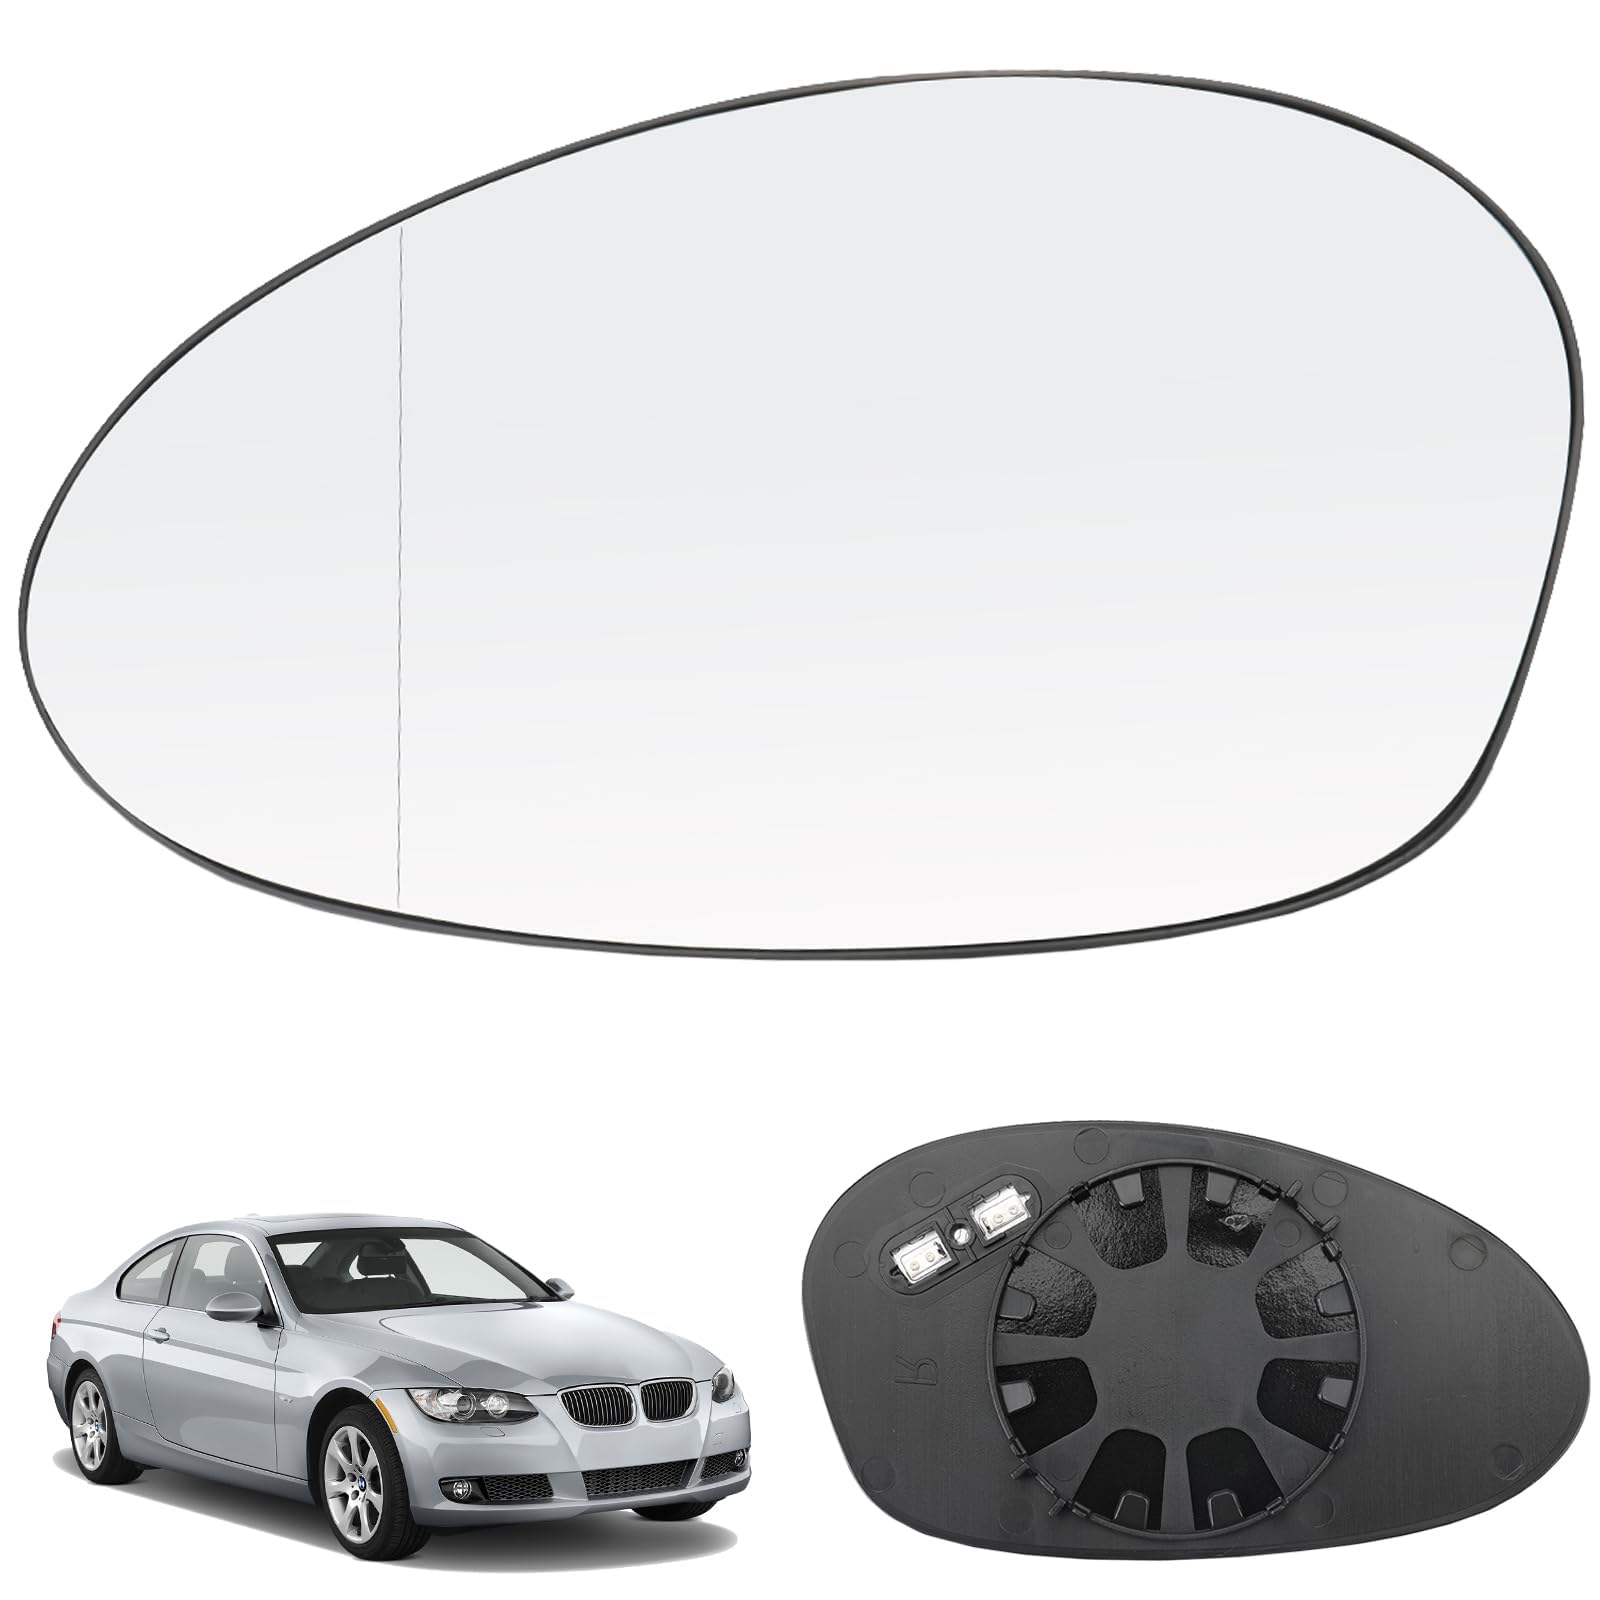 Spiegelglas Ersatz für BMW 1 3 Series E81 E88 E90 E91 E92 E93 LCI 2009-2012, Außenspiegel Glas Asphärisch, Links Rechts Verstellbar, Beheizbar Umkehrlinse, Ersatzspiegelglas,LR von LGTT